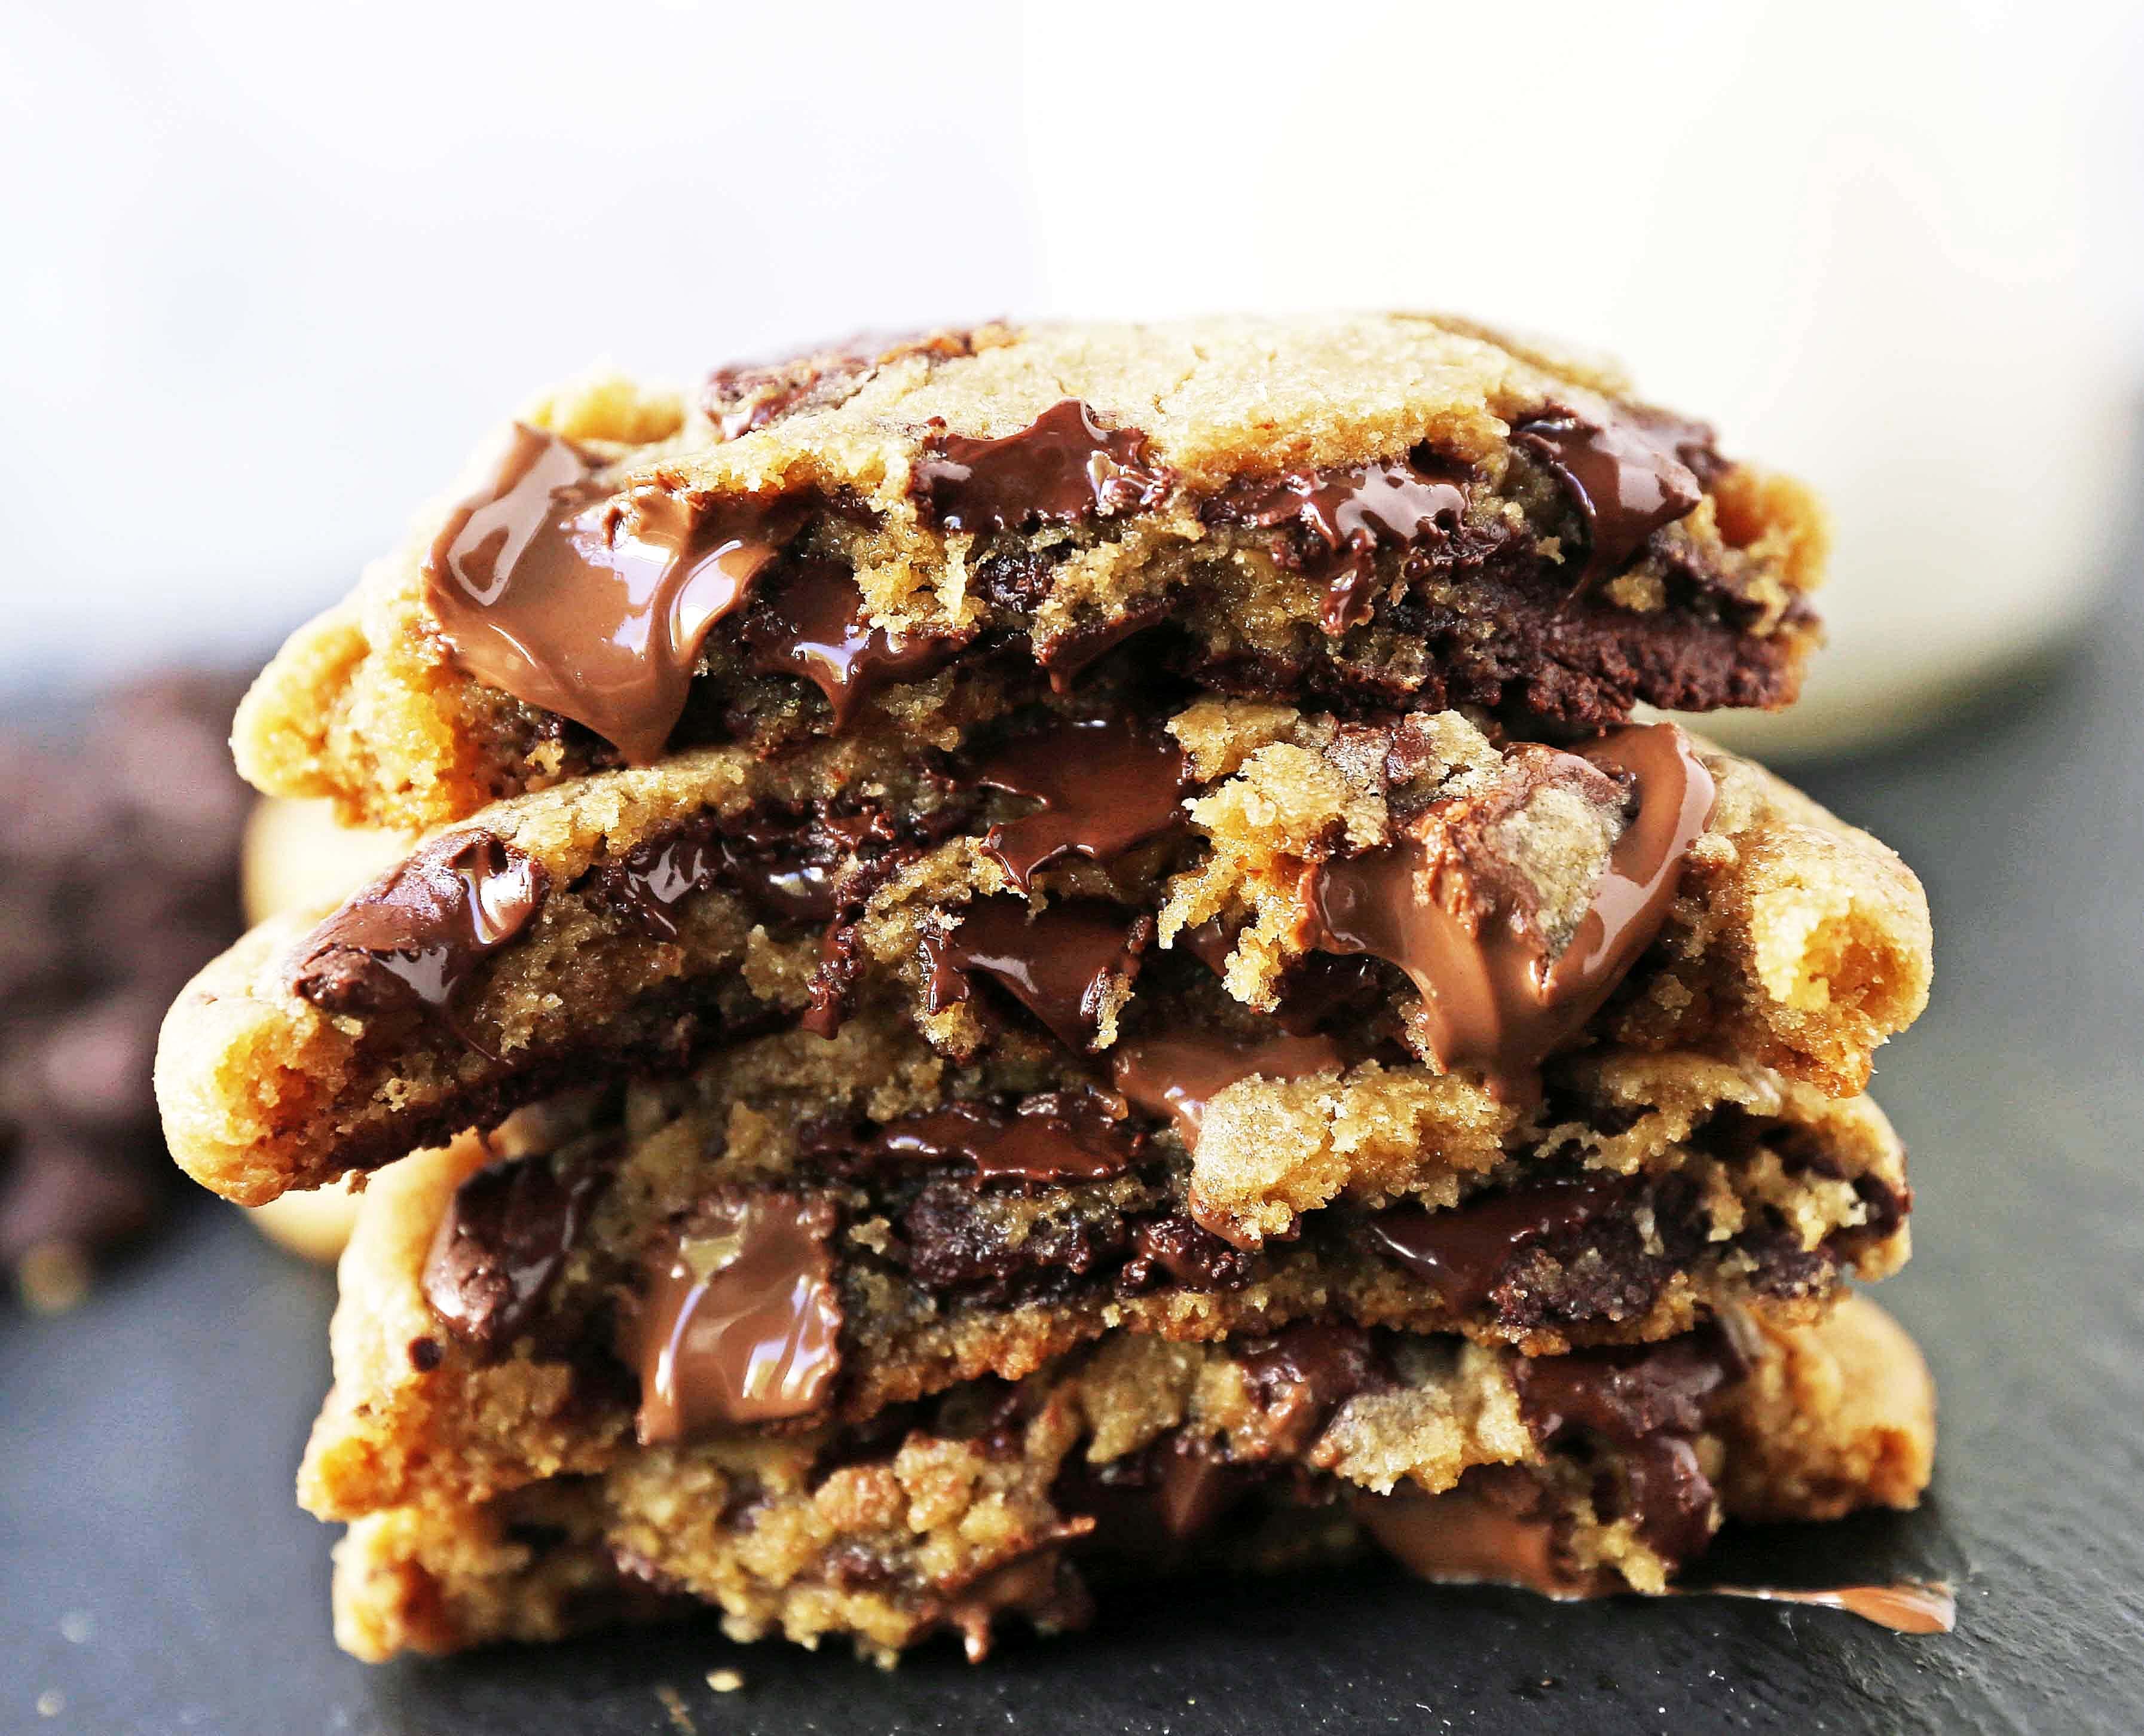 https://www.modernhoney.com/wp-content/uploads/2018/11/Brown-Butter-Chocolate-Chip-Cookies-11.jpg